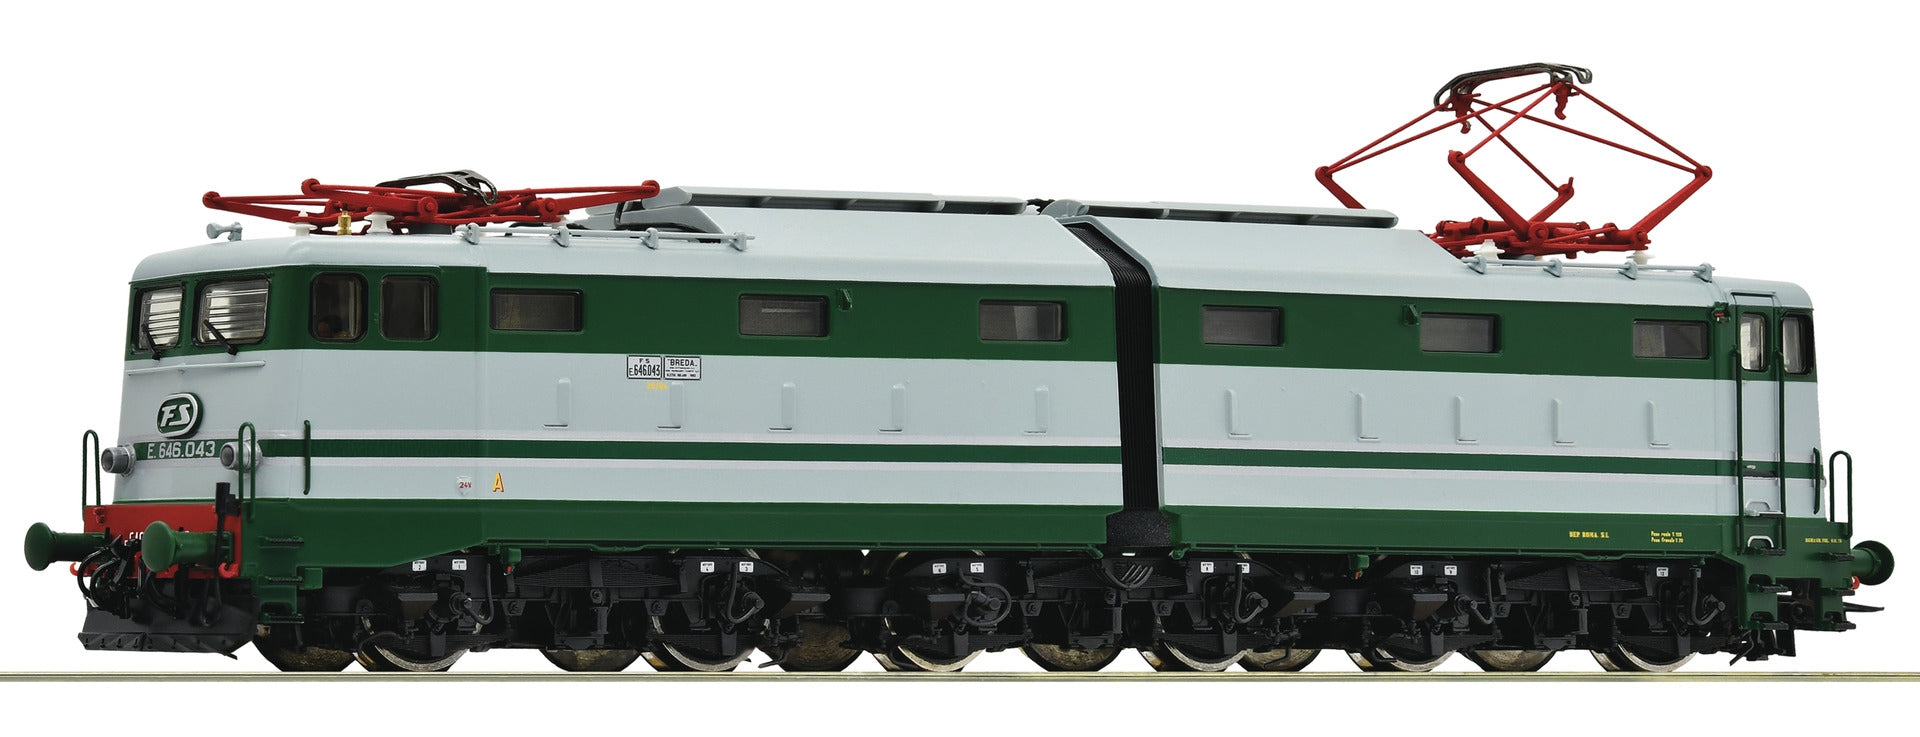 ROCO 73164  - H0 187 - Locomotiva elettrica FS E646.043 dep. Roma S.L. Ep. IV